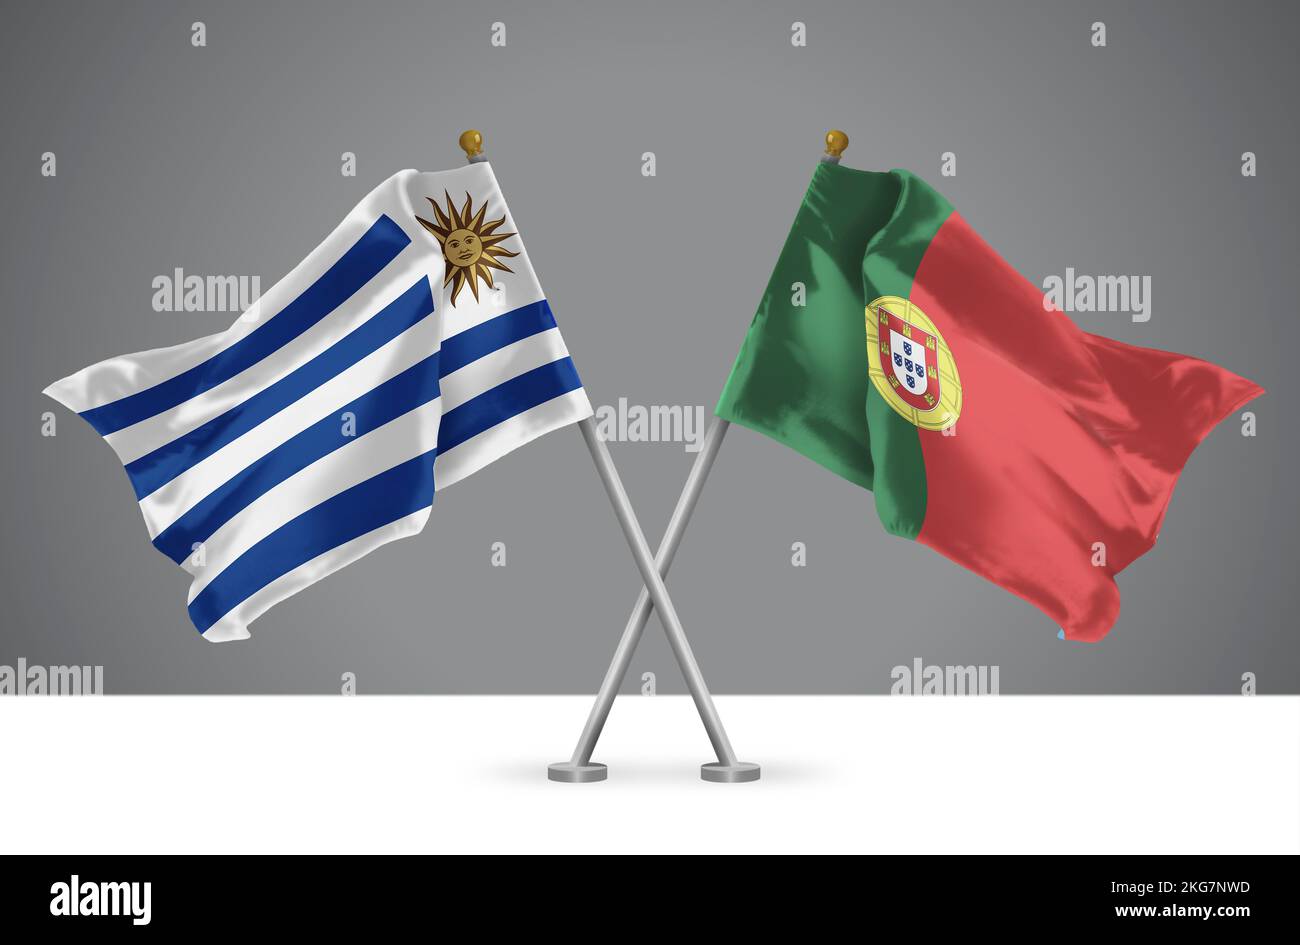 3D illustrazione di due bandiere ondulate incrociate dell'Uruguay e del Portogallo, segno delle relazioni uruguaiane e portoghesi Foto Stock